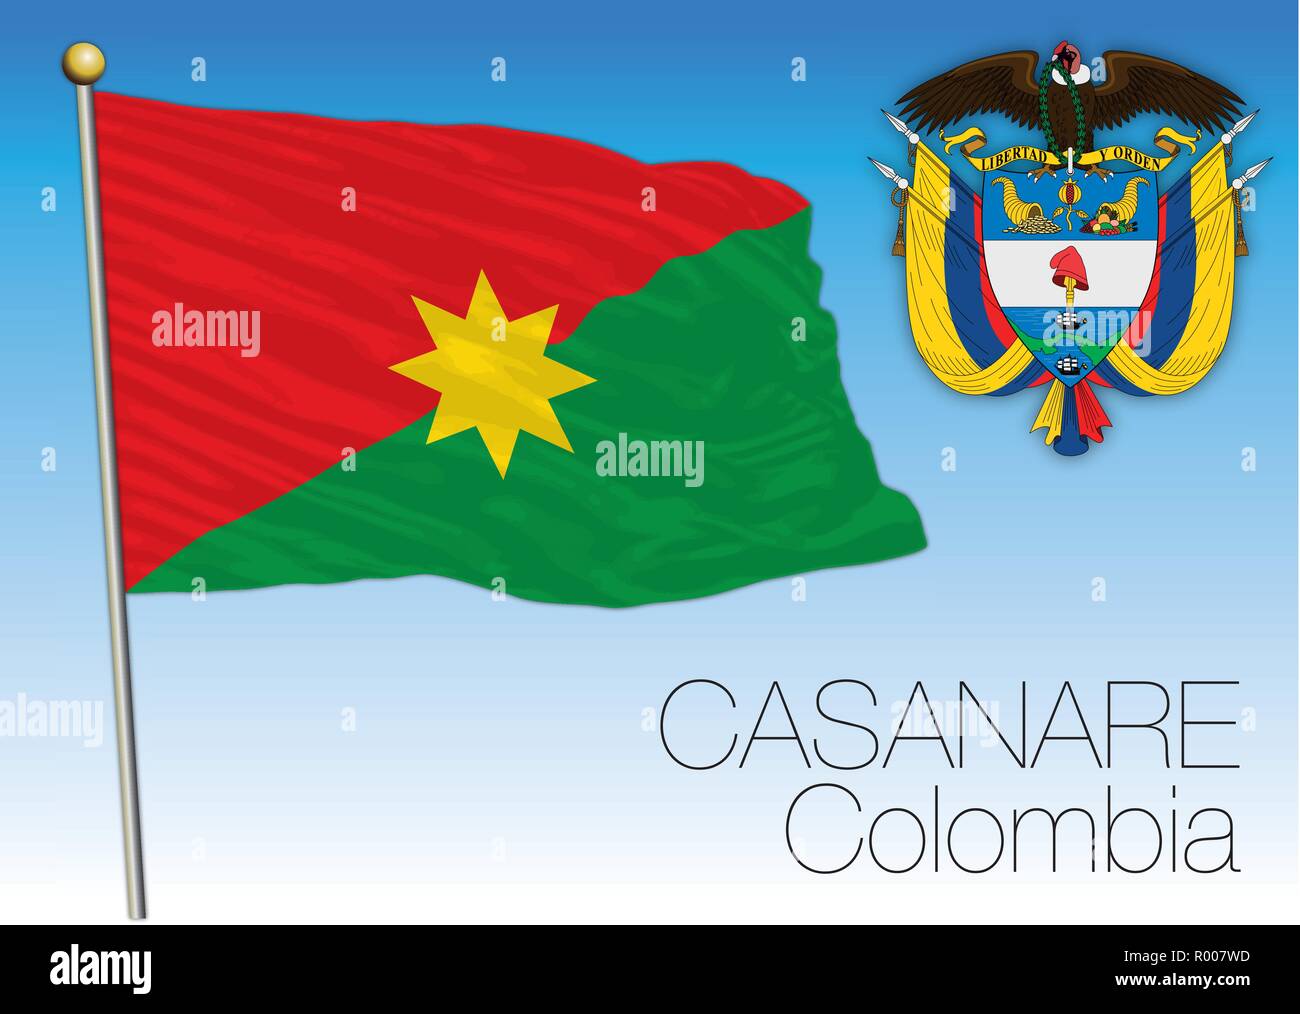 Casanare regional flag, Republica de Colombia, vector illustration Stock Vector